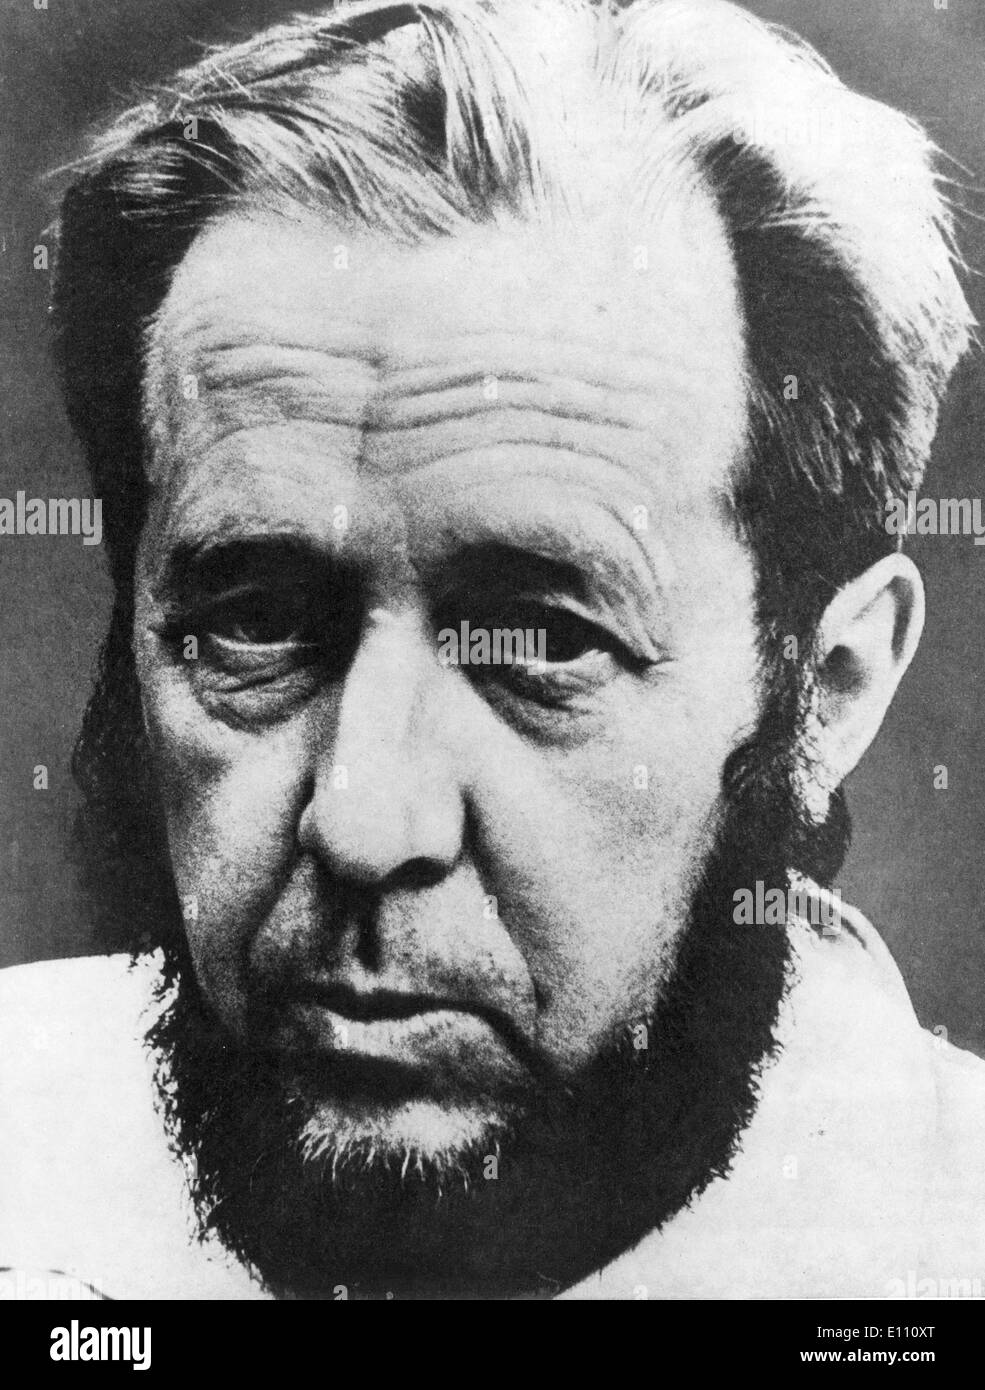 Dec 09, 1974; Stockholm, Sweden; exiled Soviet writer, ALEXANDER SOLZHENITSYN, Stock Photo